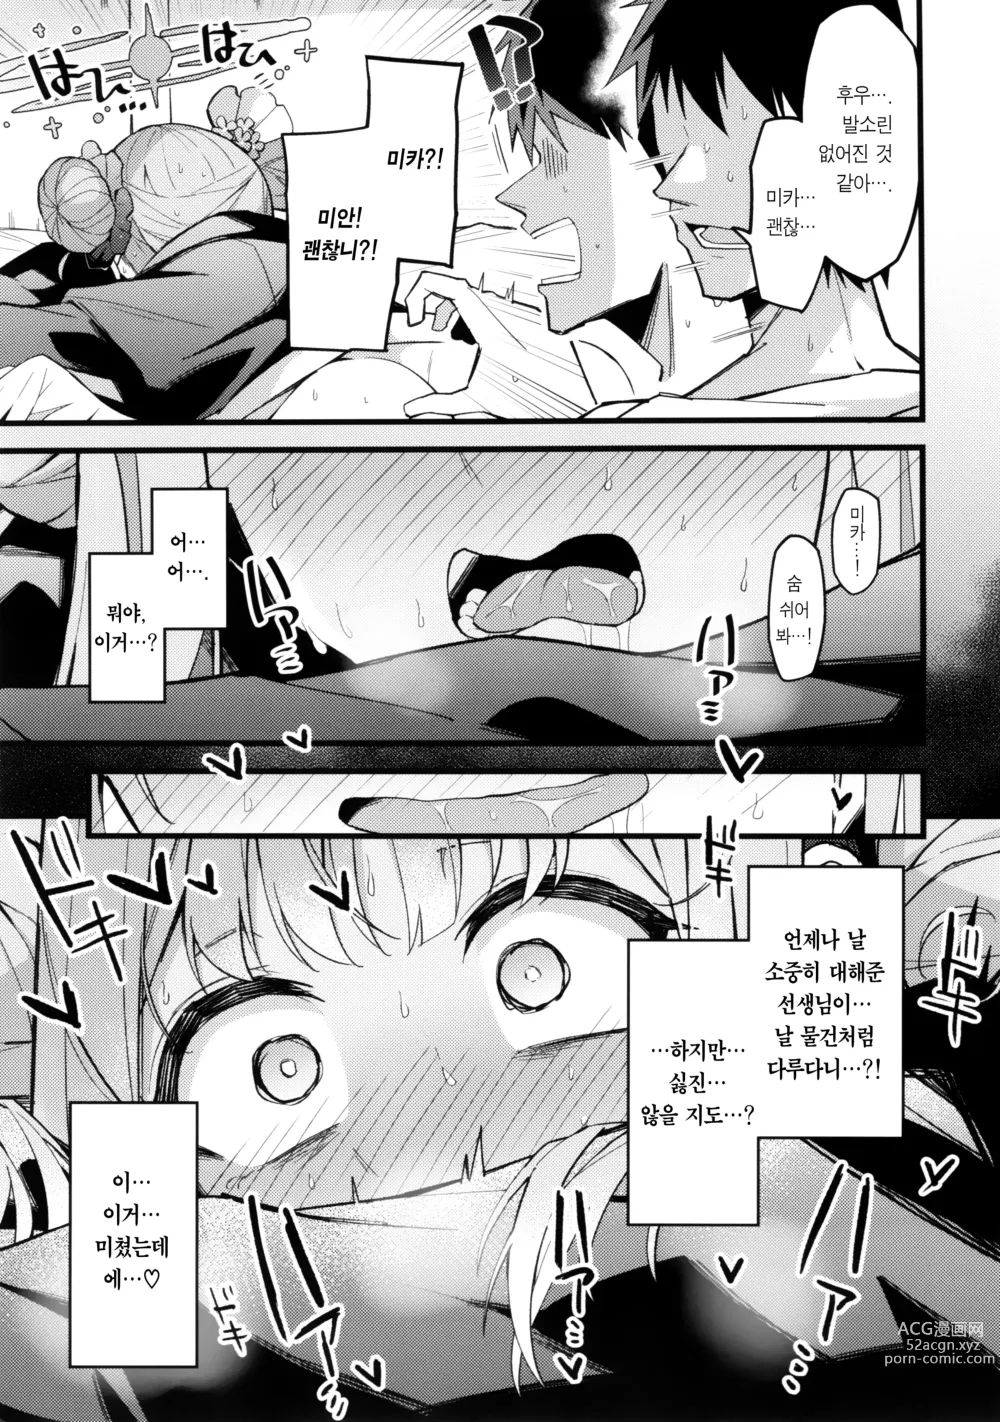 Page 18 of doujinshi 미카, 소리 내지 마.